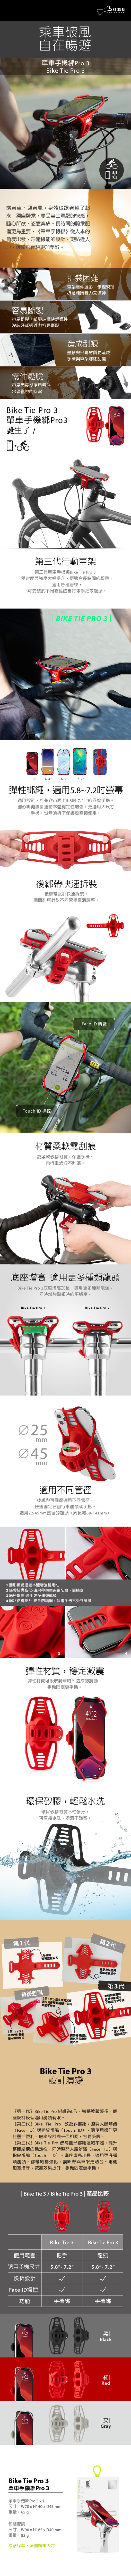 【3/29~5/31畢業季88折優惠】Bone Bike Tie Pro 3 單車手機綁 Pro 3(黑)